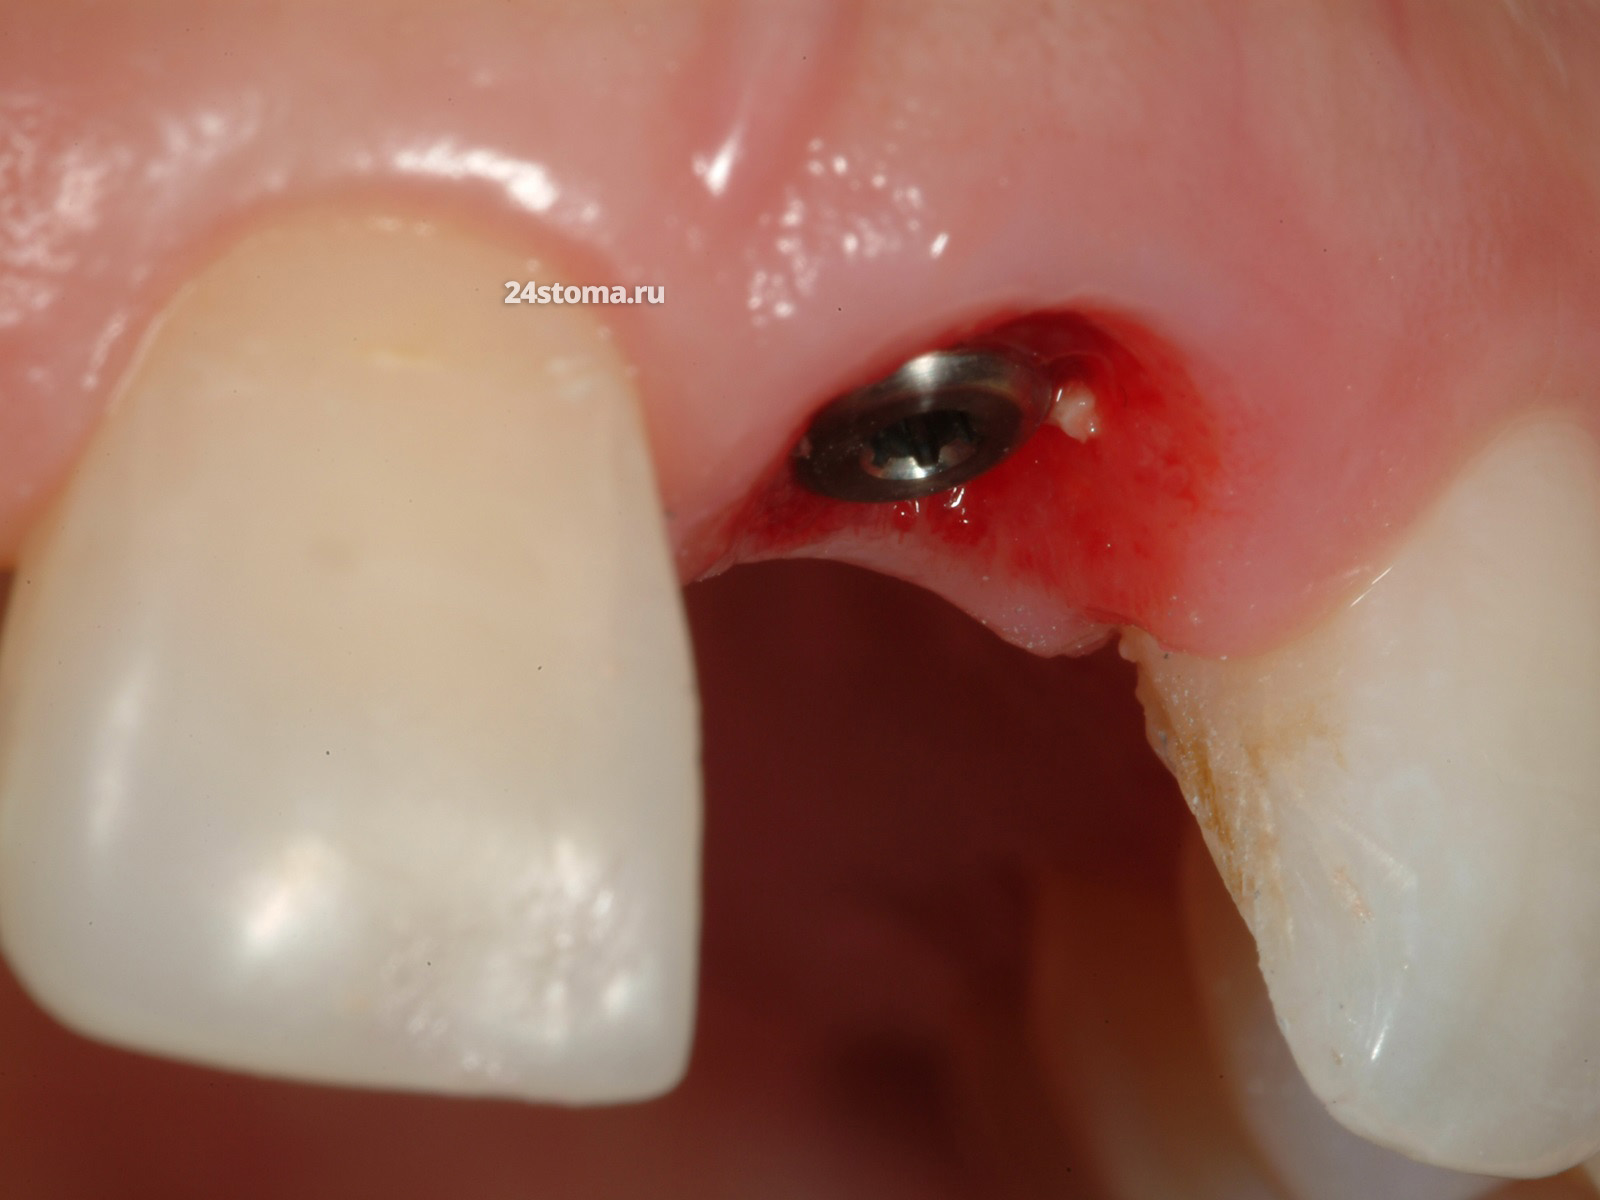 Протезирование переднего зуба циркониевой коронкой на зубном имплантате